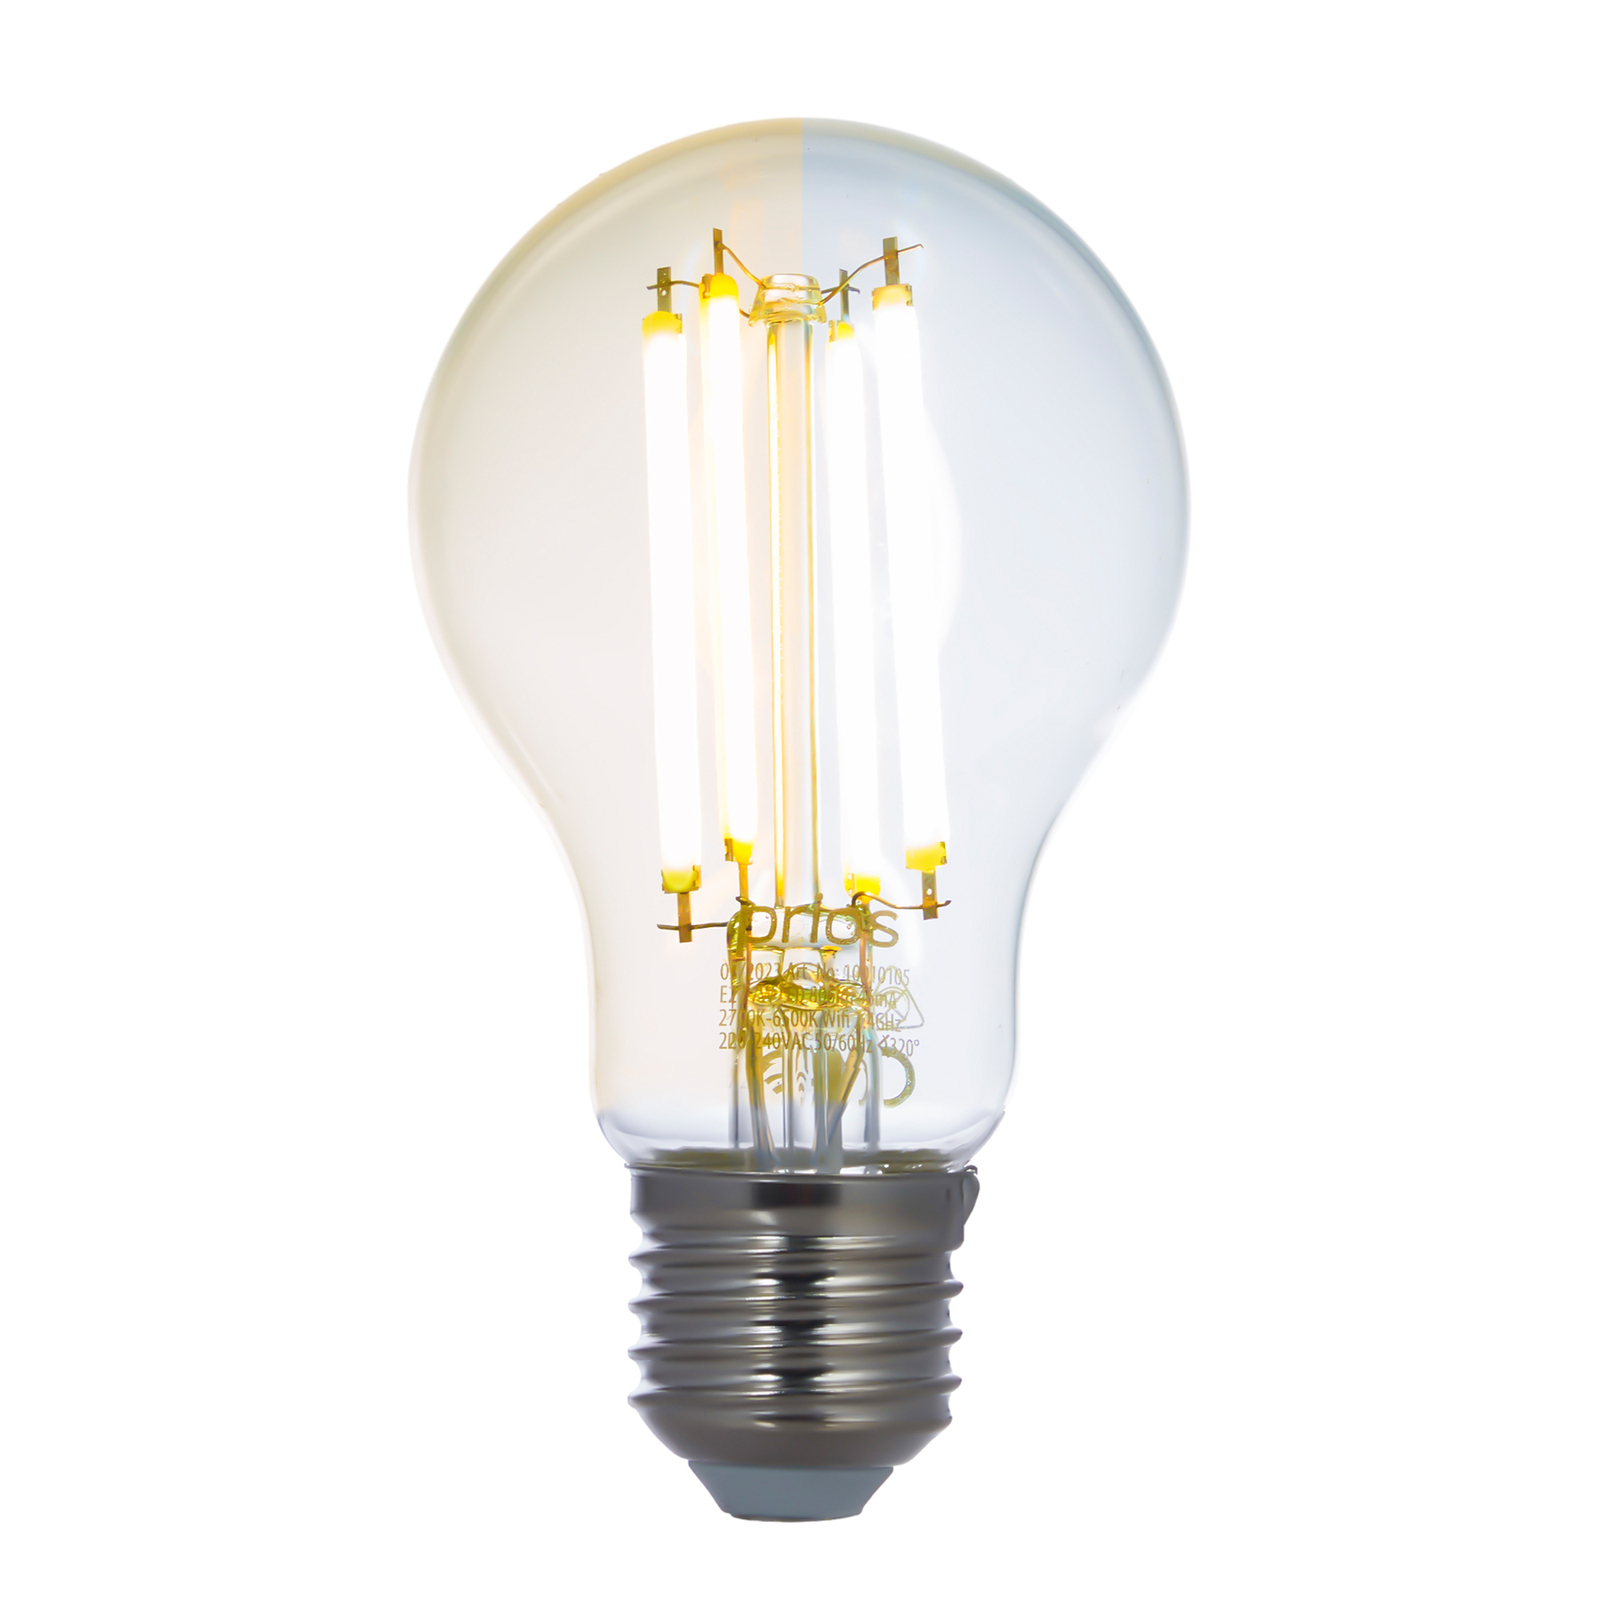 Smart E27 A60 LED-Lampe 7W tunable white WLAN klar